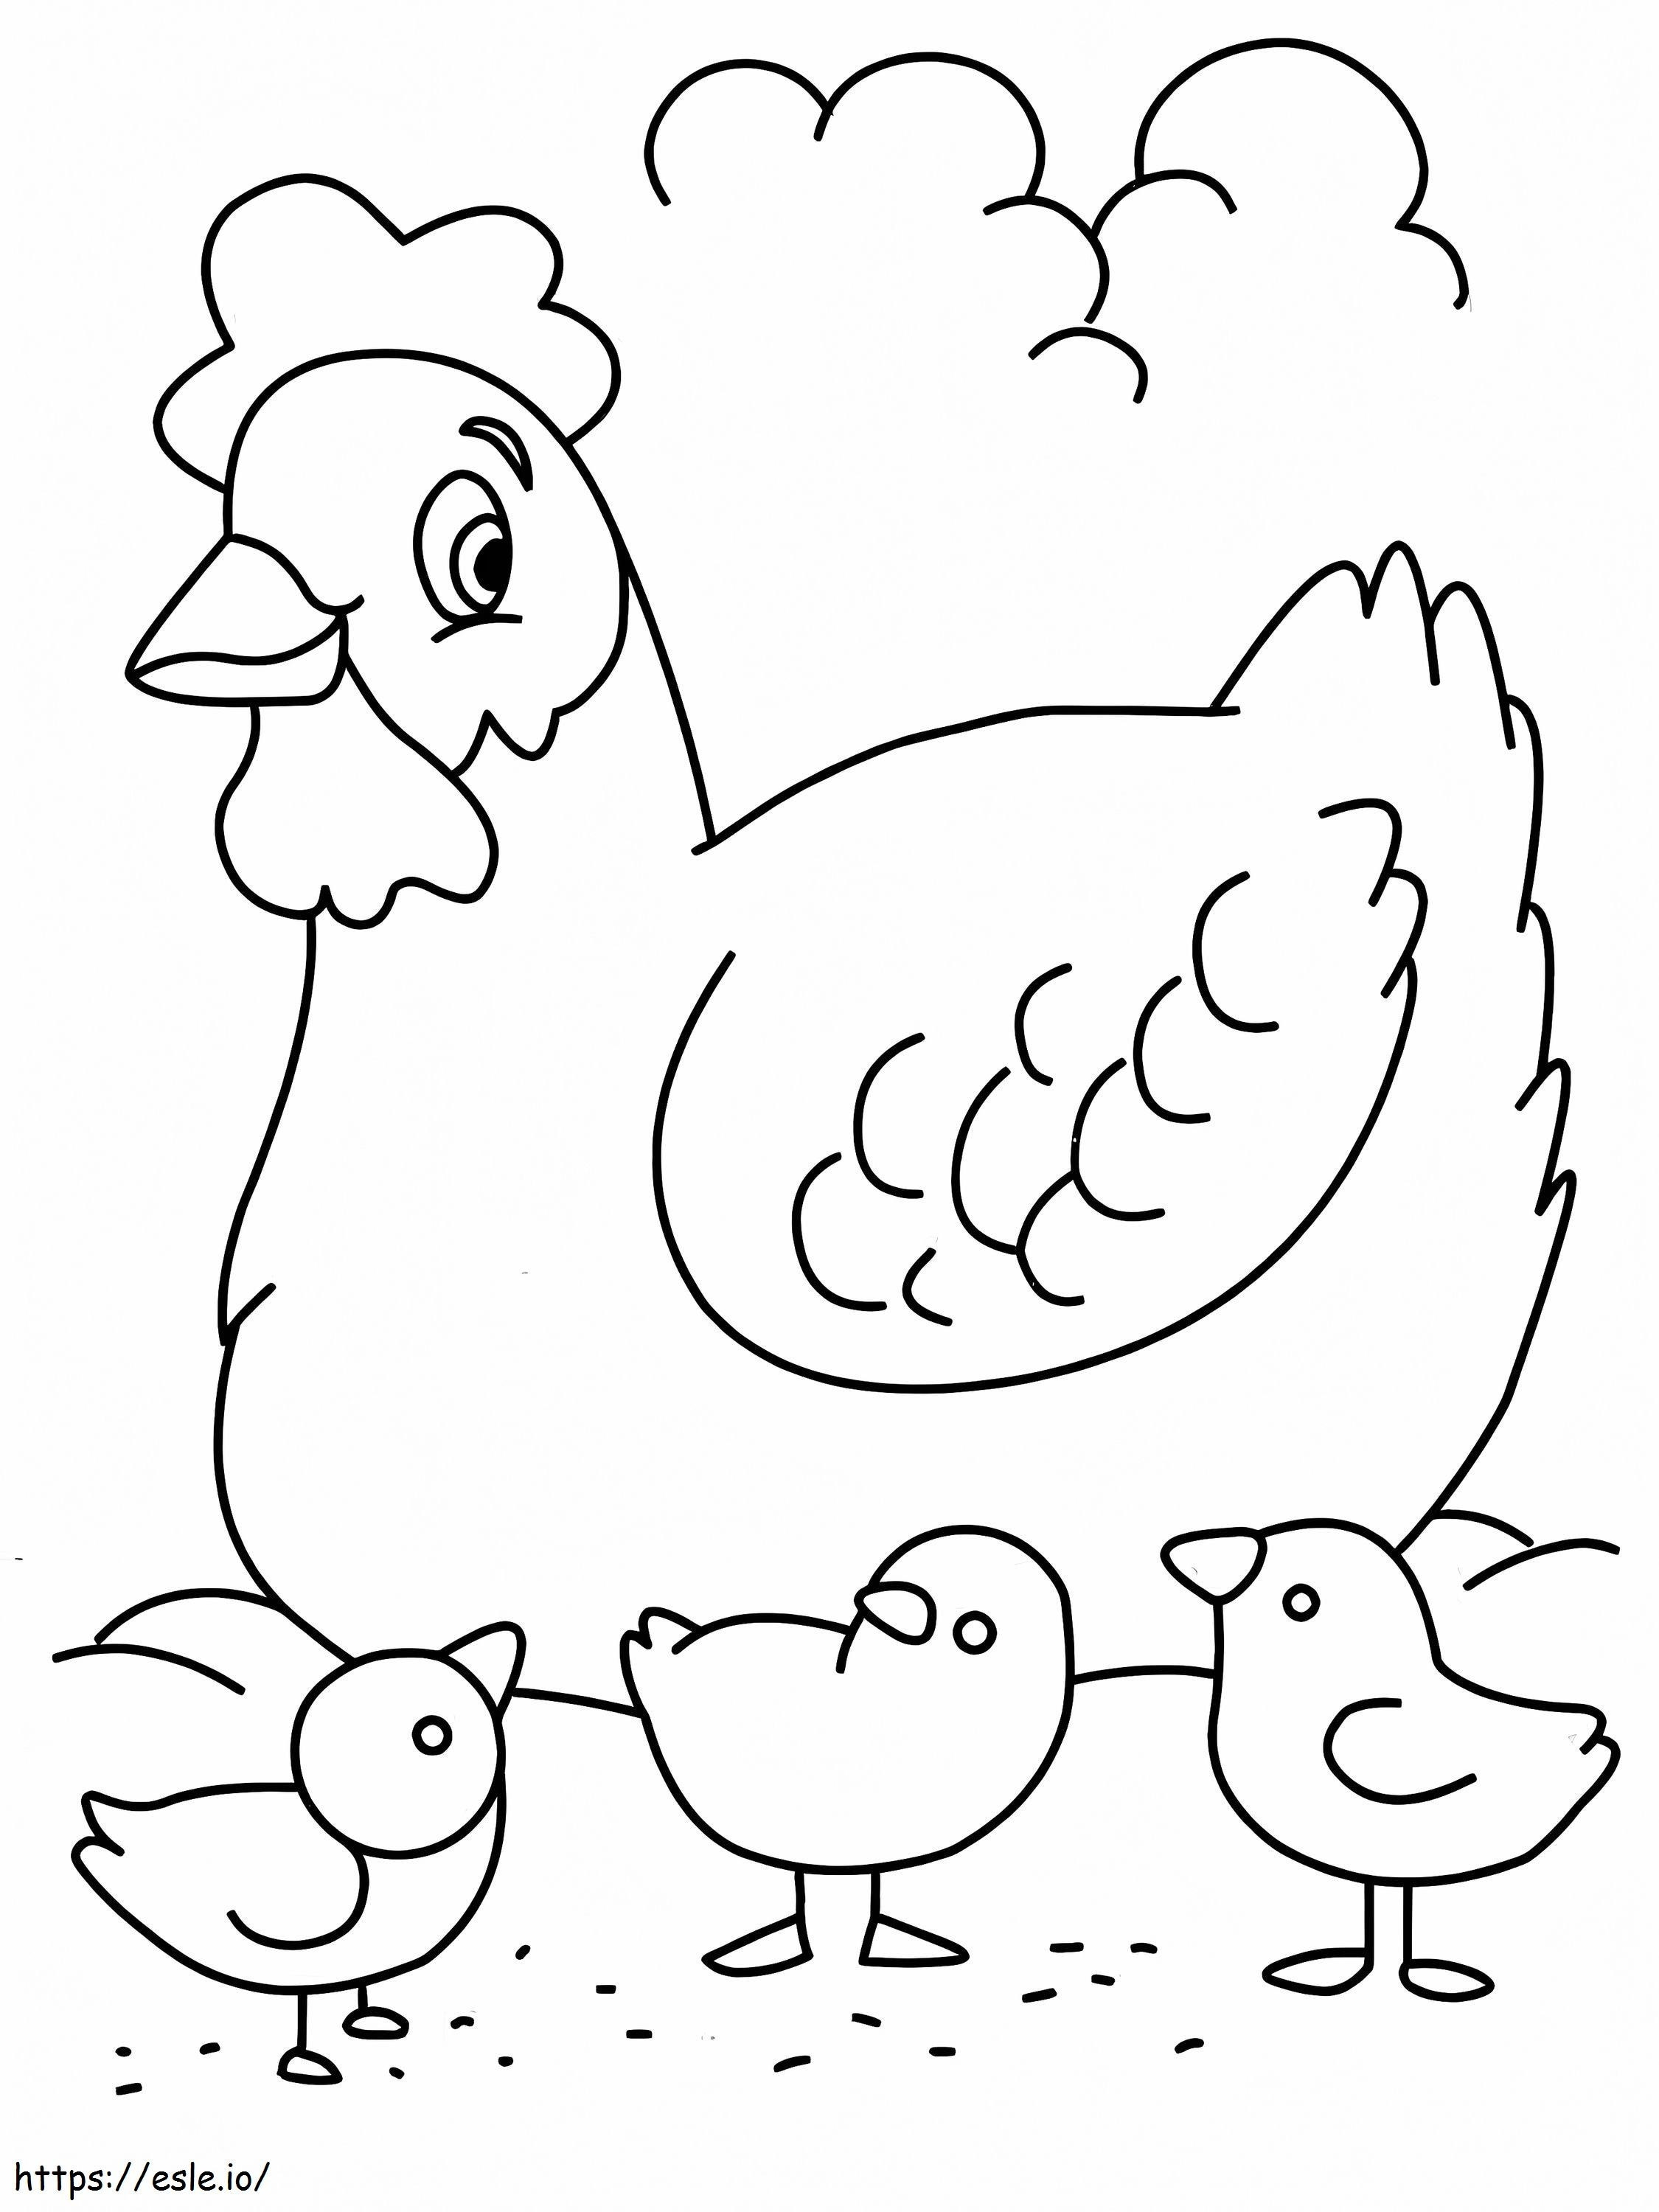 Desenho de galinha e pintinhos para colorir